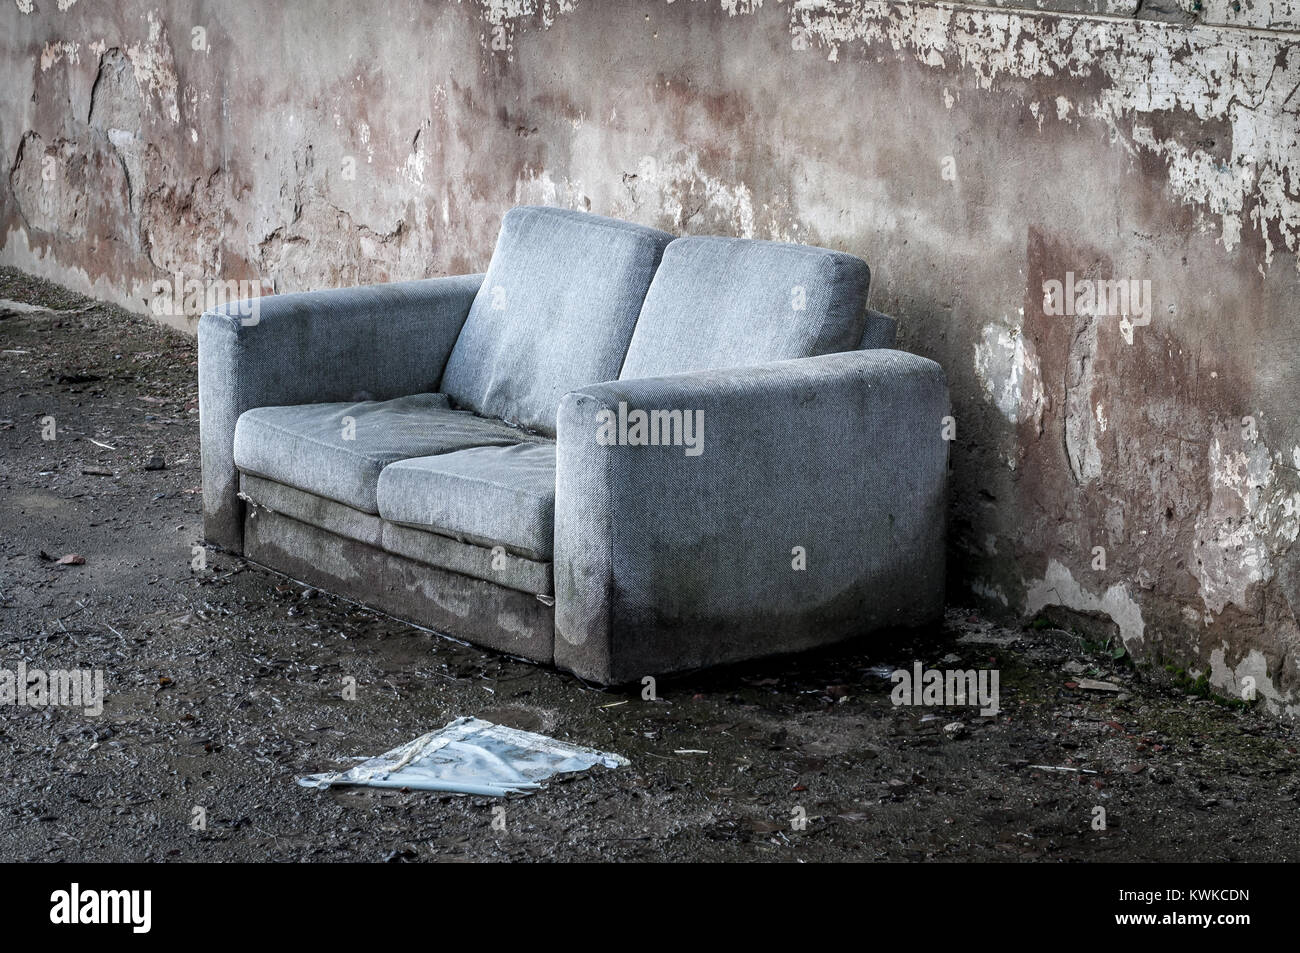 Alte couch Nass- und zerstört Stockfotografie - Alamy